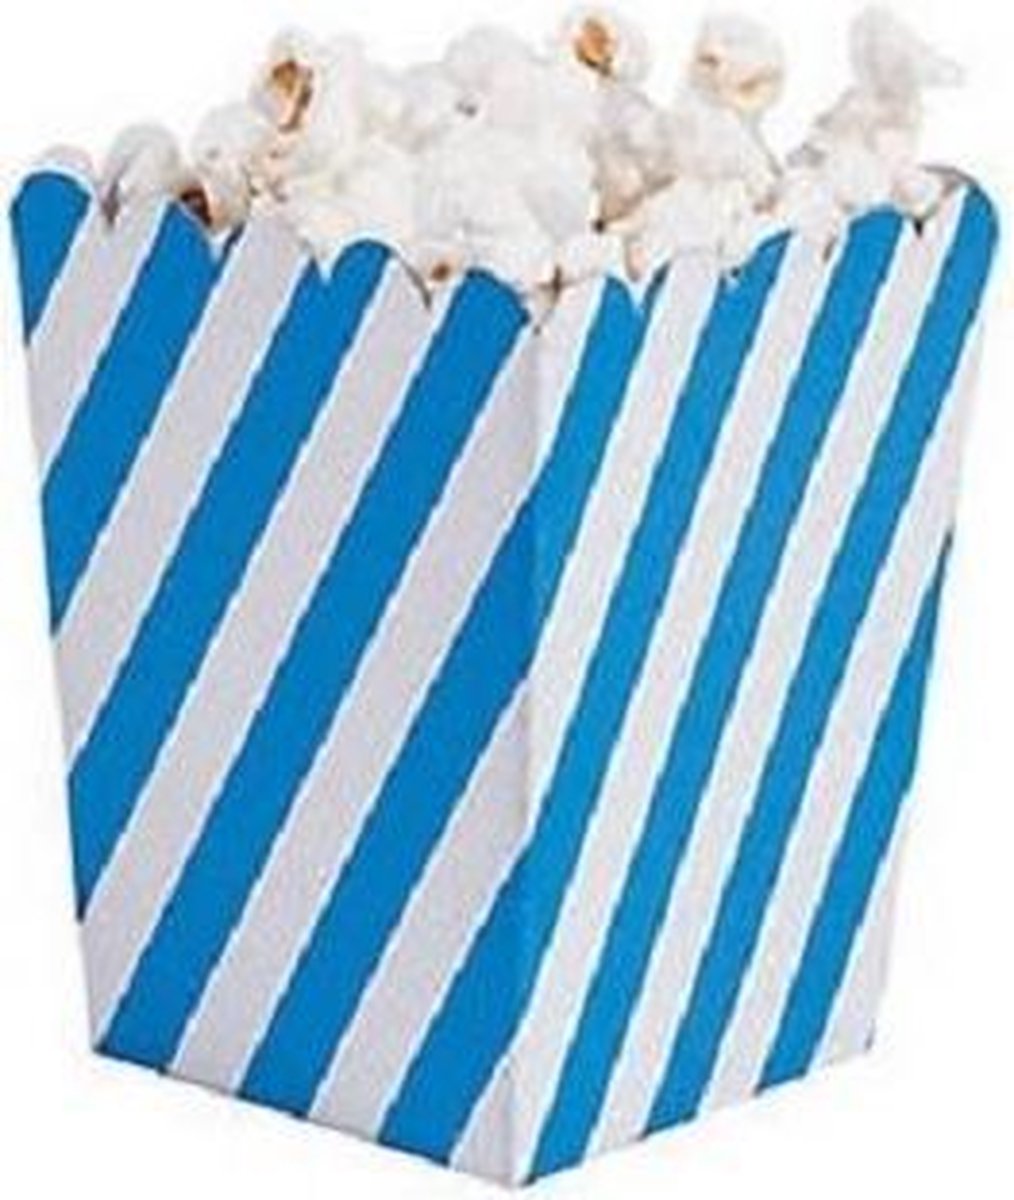 Afbeelding van product joyenco  Popcornbakjes blauw schuin gestreept - 12 stuks - stevig karton - klein formaat - 8 cm breed - 10 cm hoog